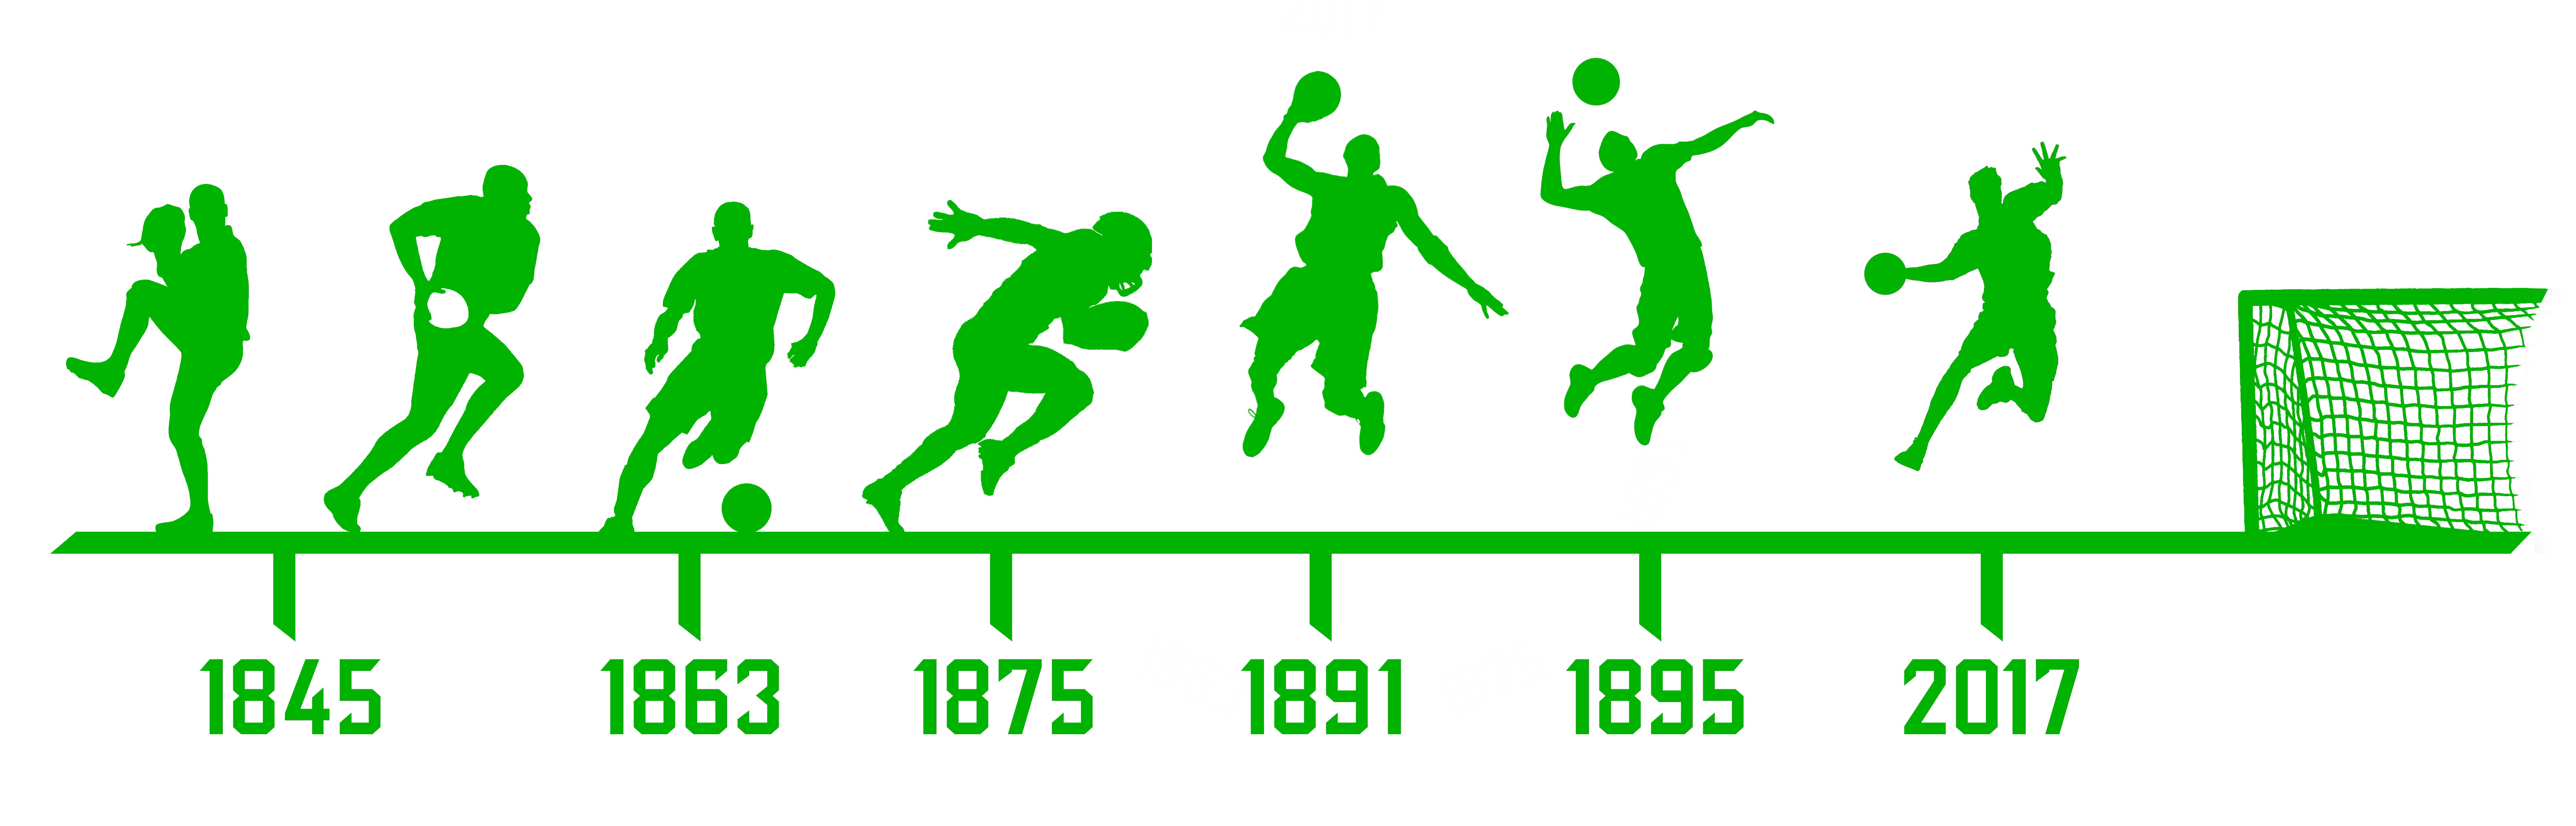 historical timeline showing evolution of sports